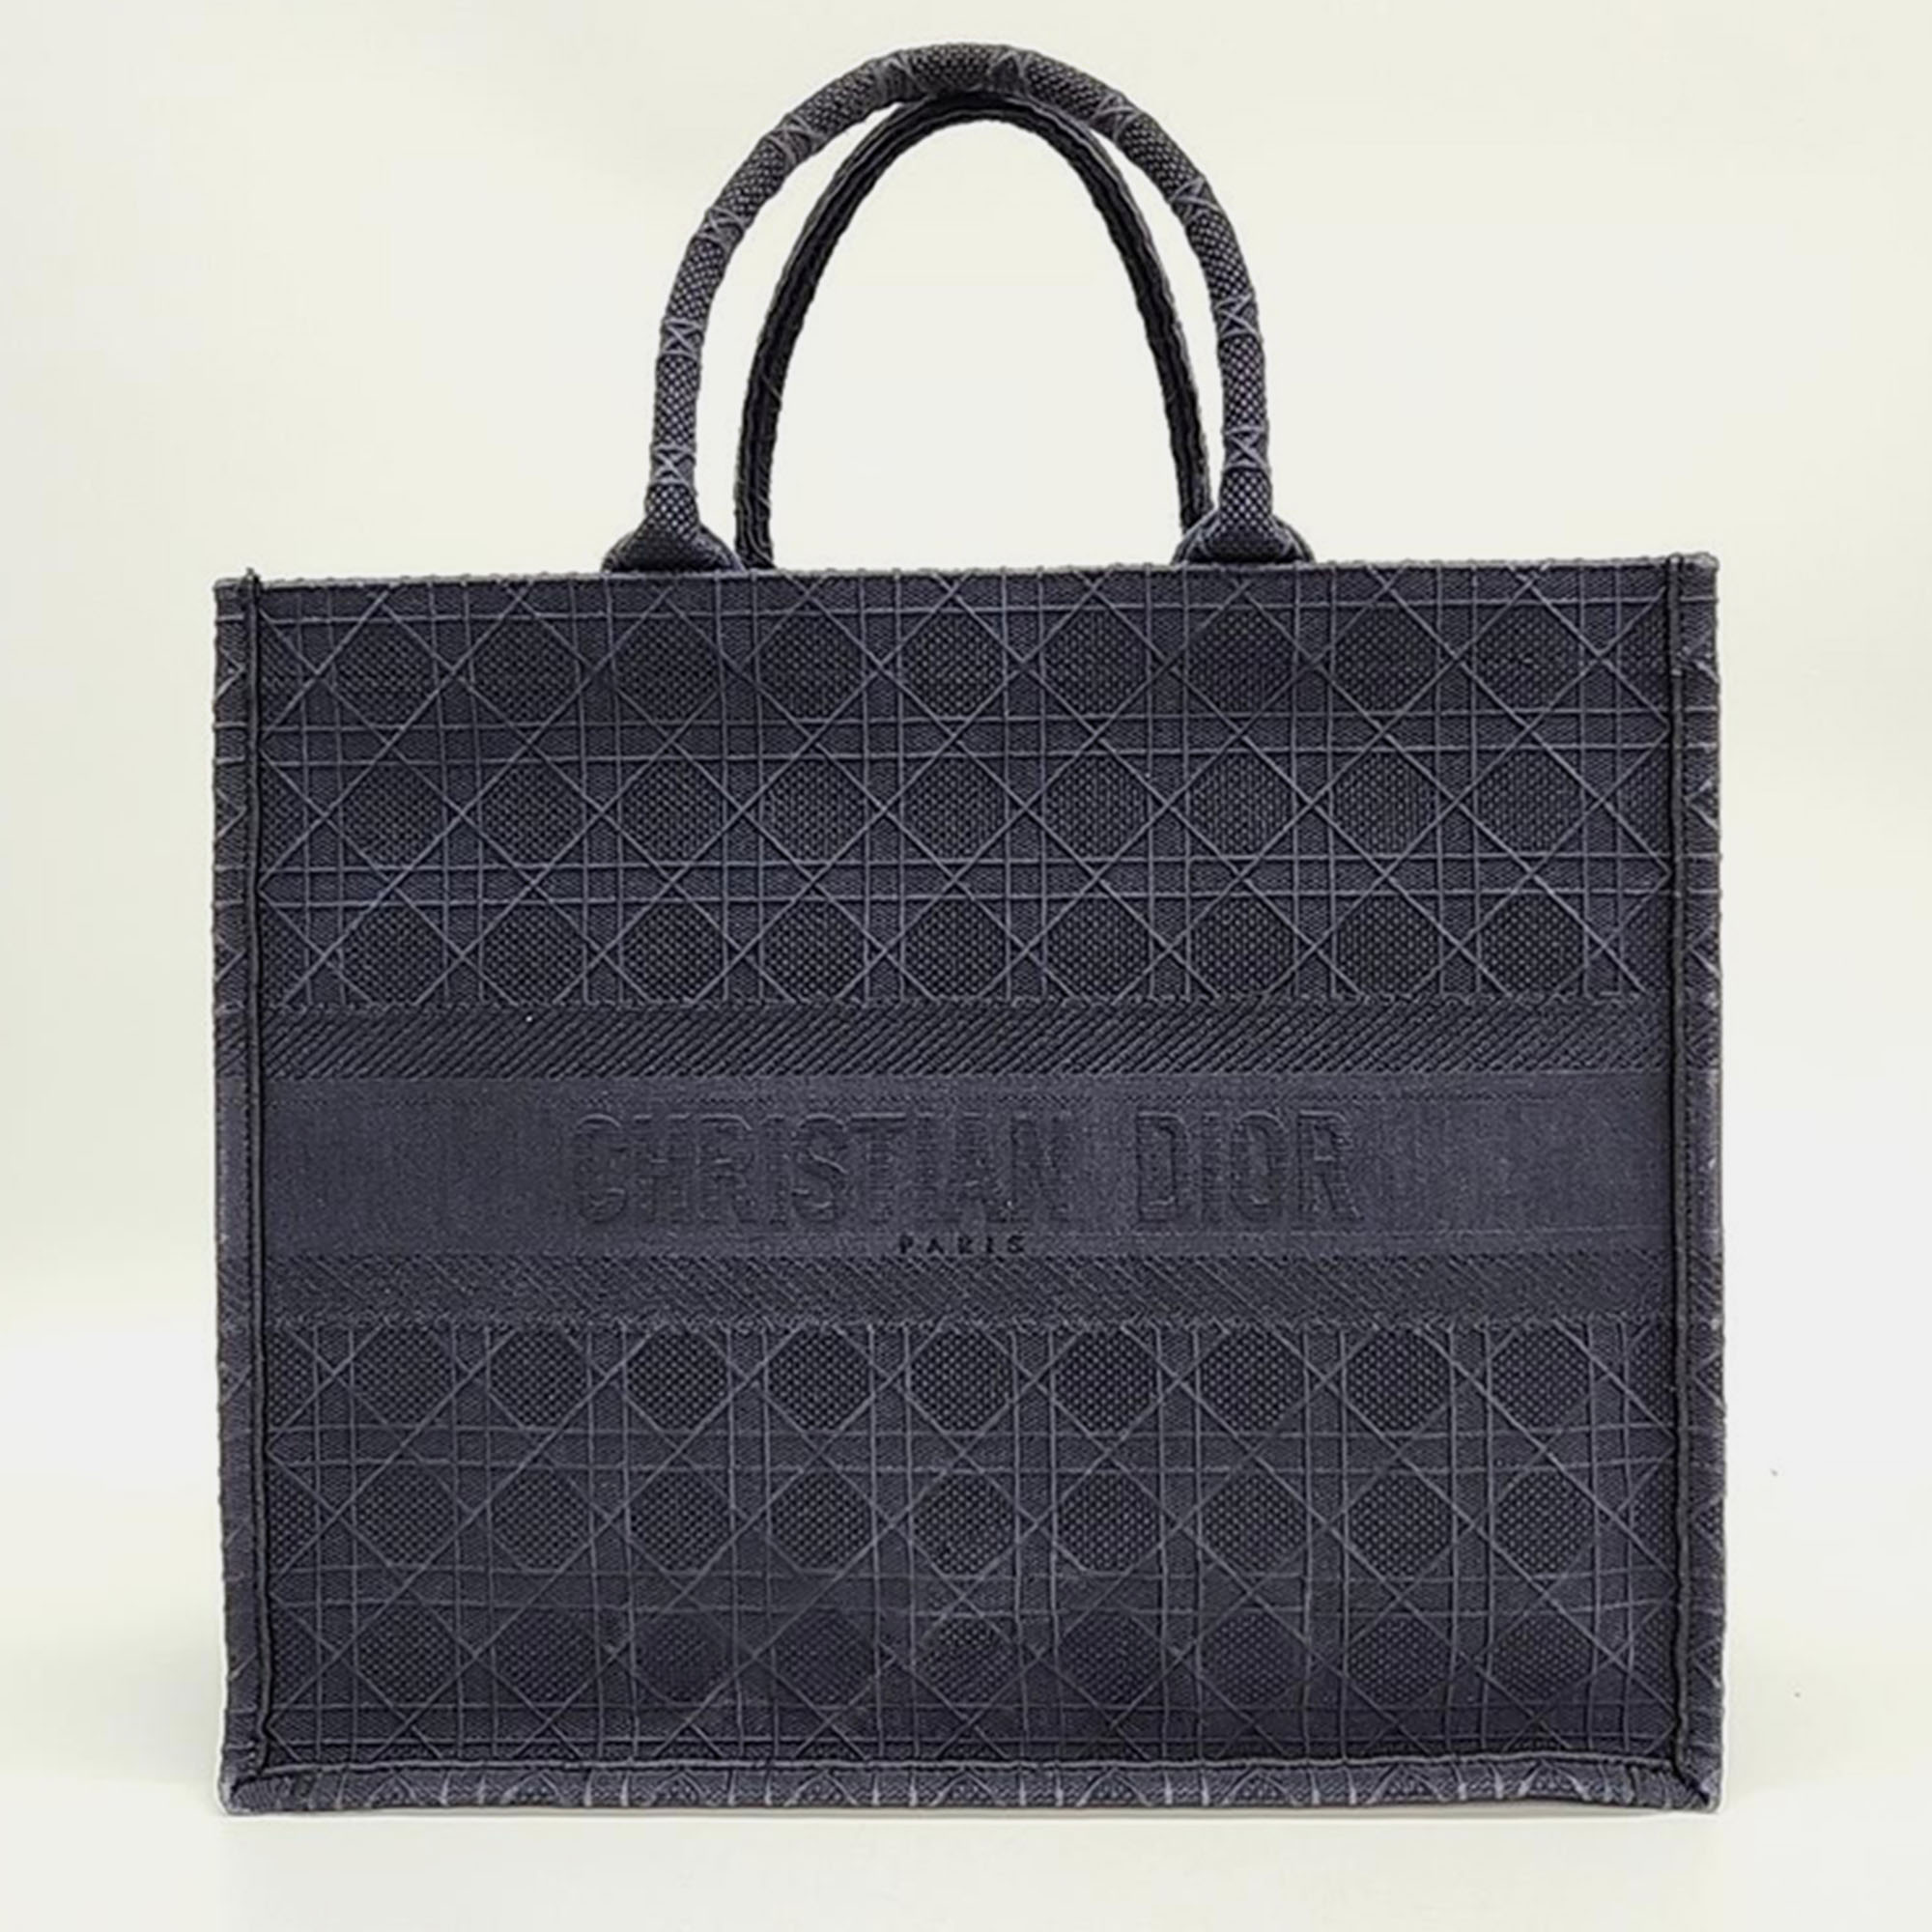 Christian Dior Book Tote Bag 42 M1286